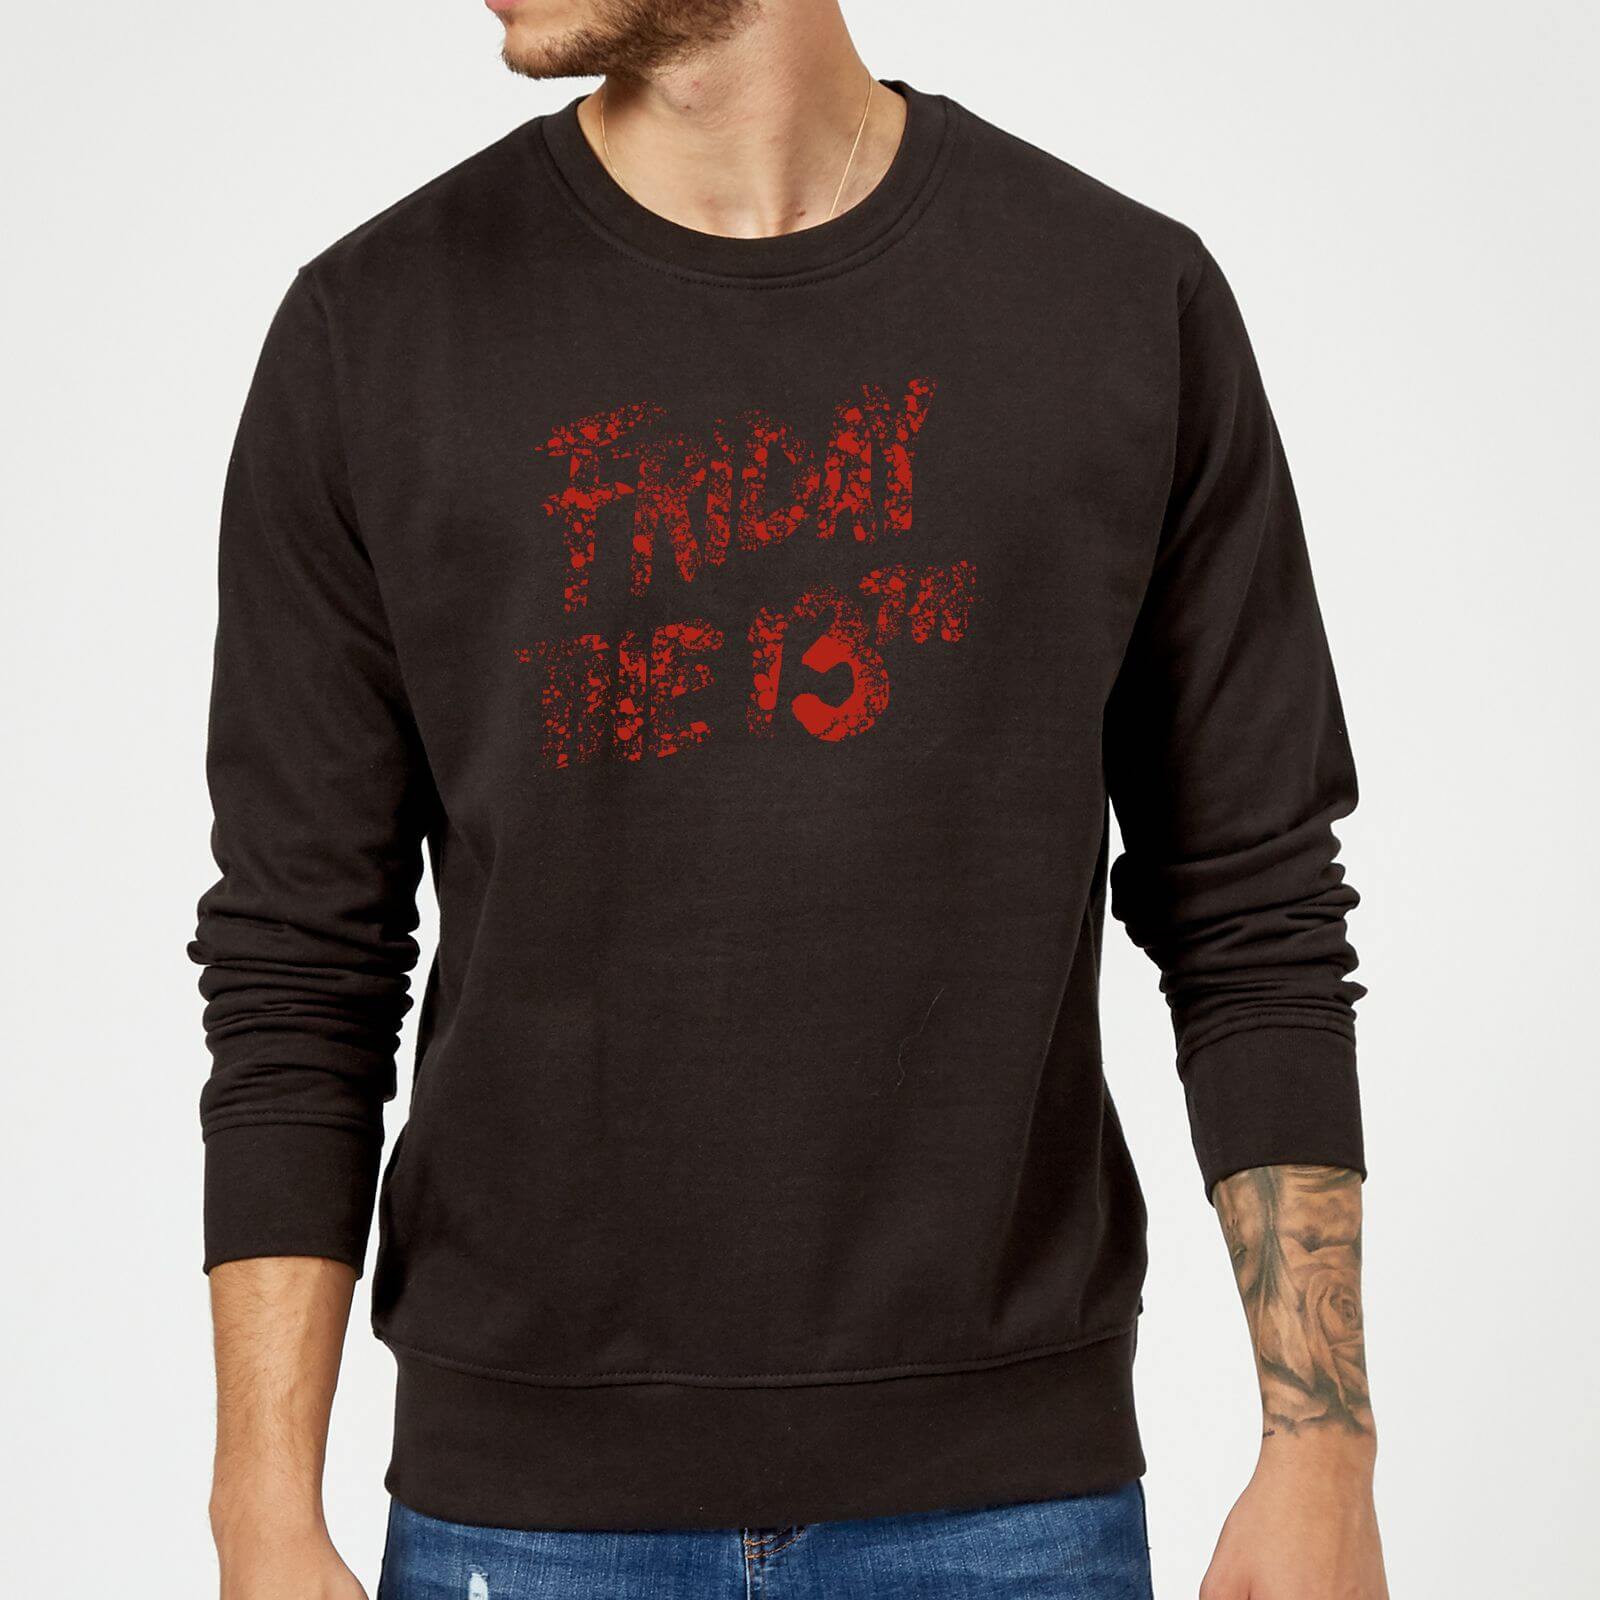 Friday the 13th Logo Blood Sweatshirt - Black - 5XL - Black